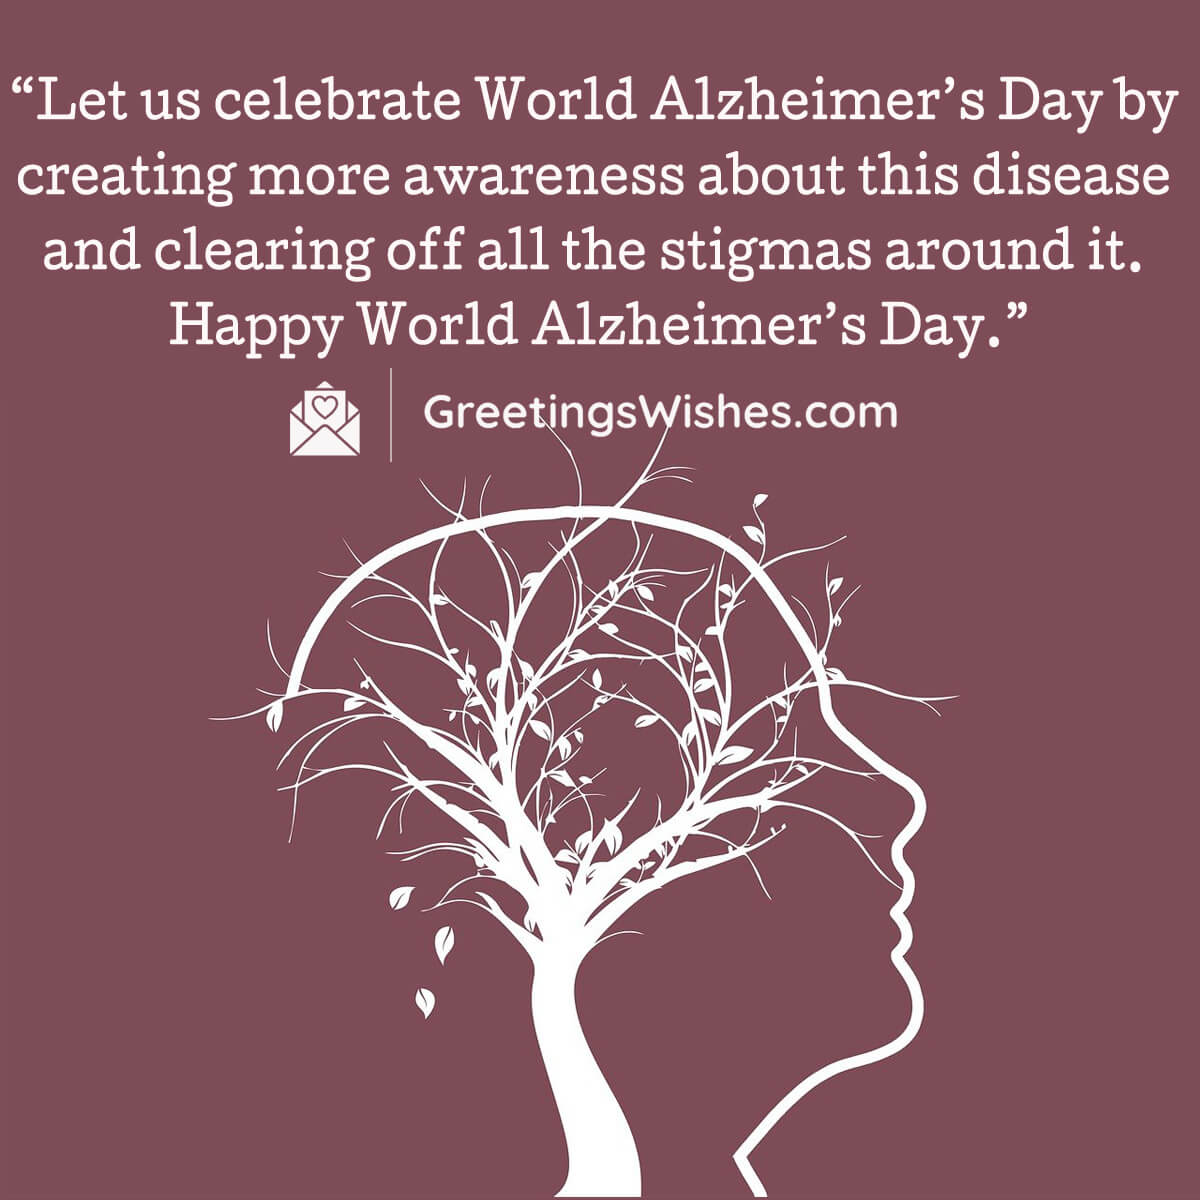 World Alzheimer’s Day Images